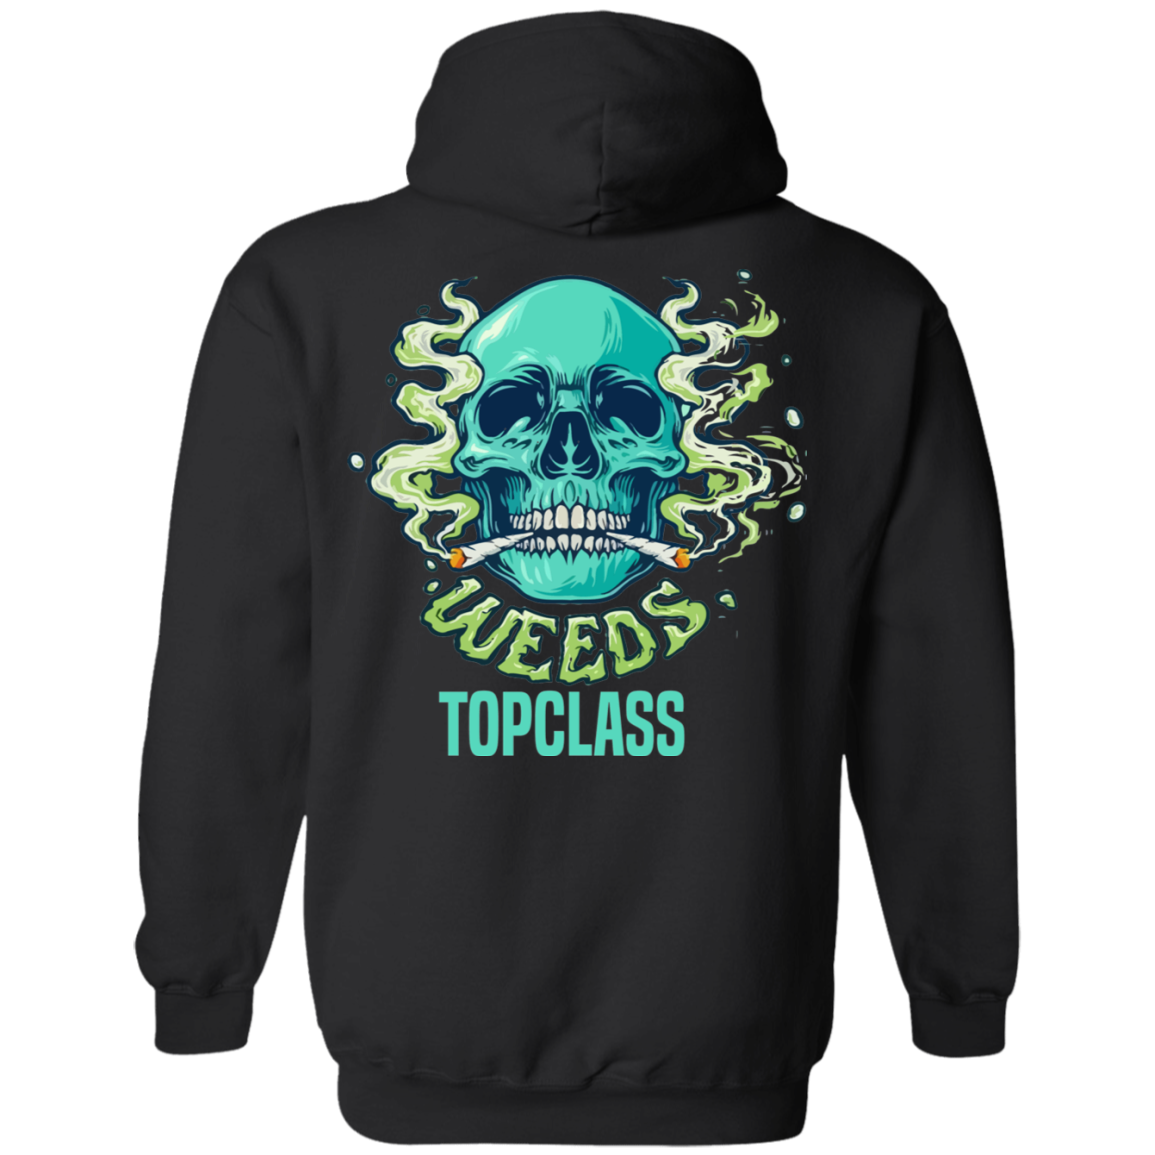 Topclass Weeds Hoodie